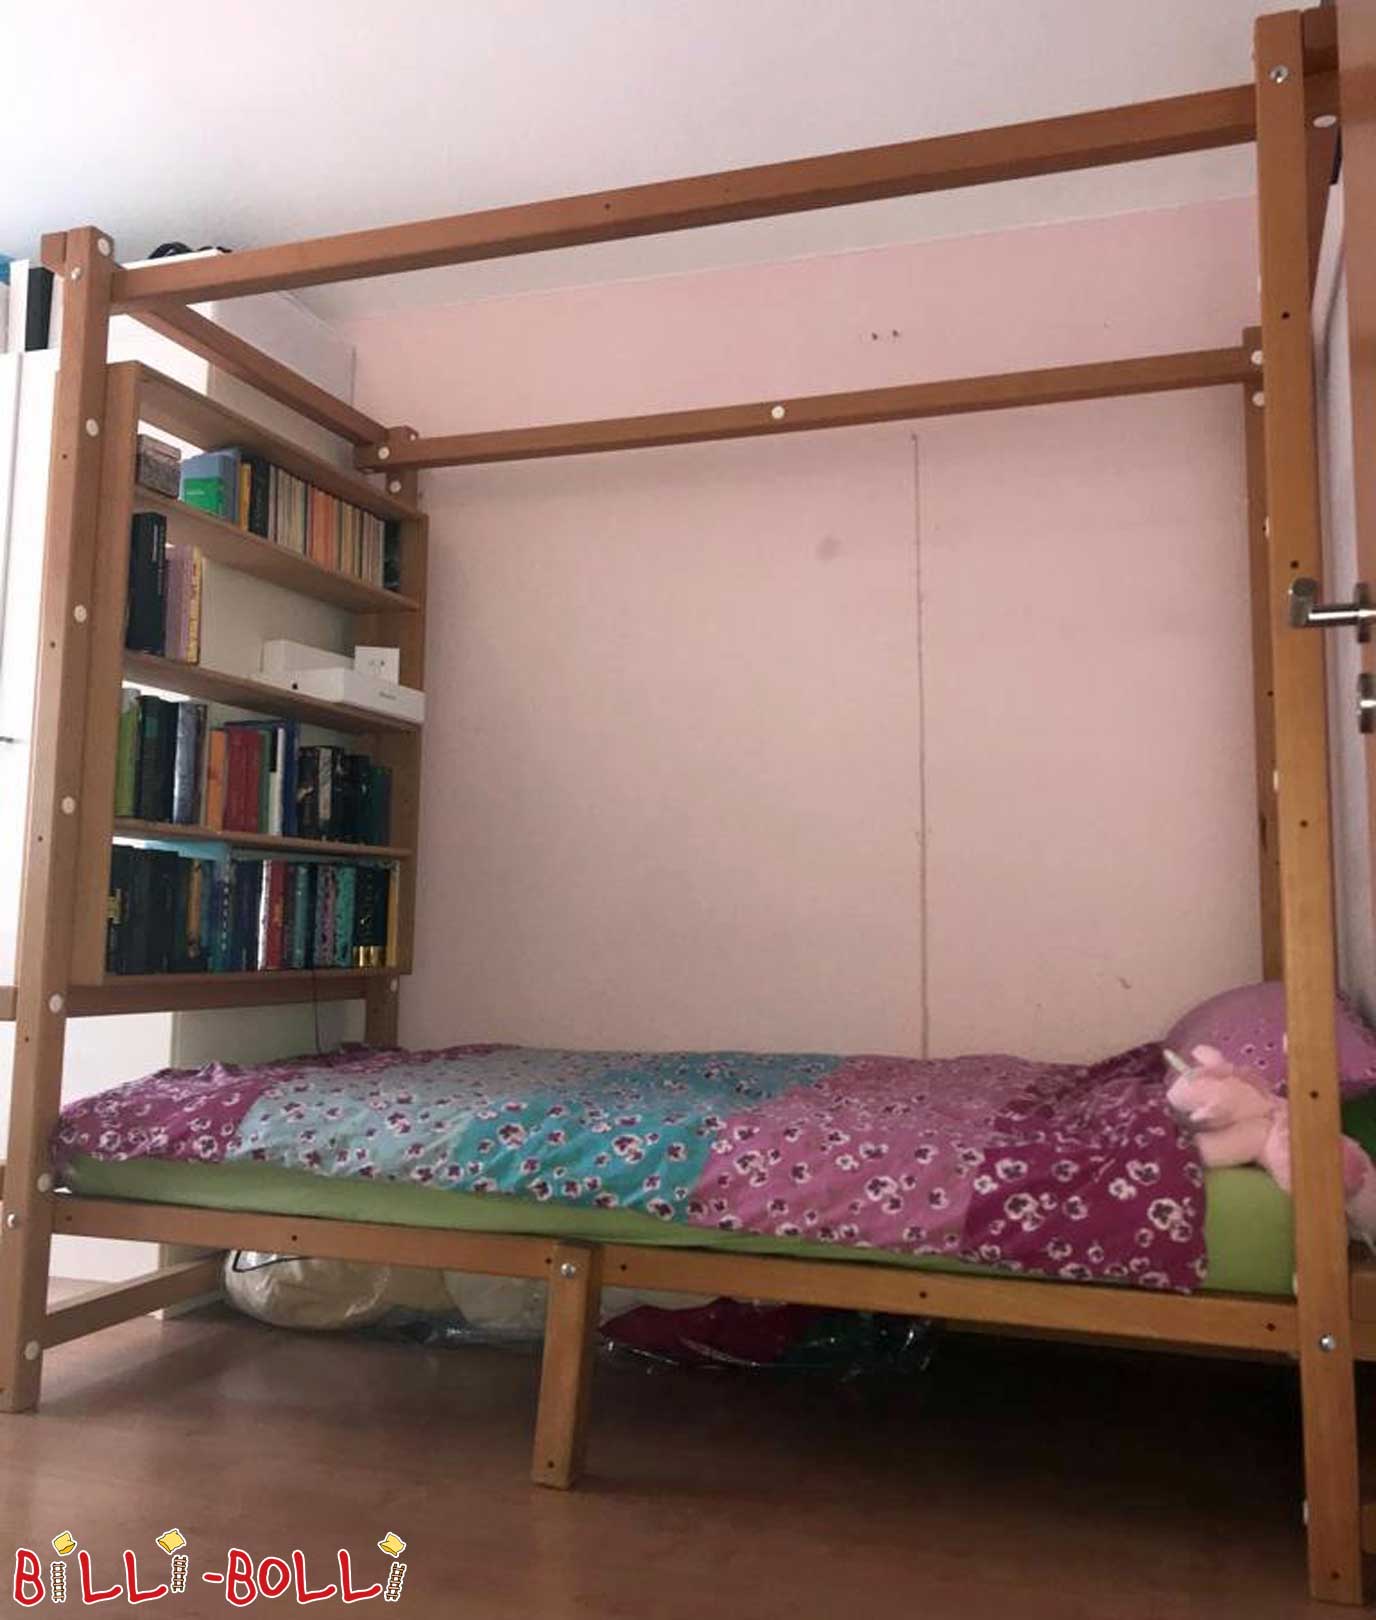 Podkrovní postel, která roste s dítětem (Kategorie: Použitá podkrovní postel)